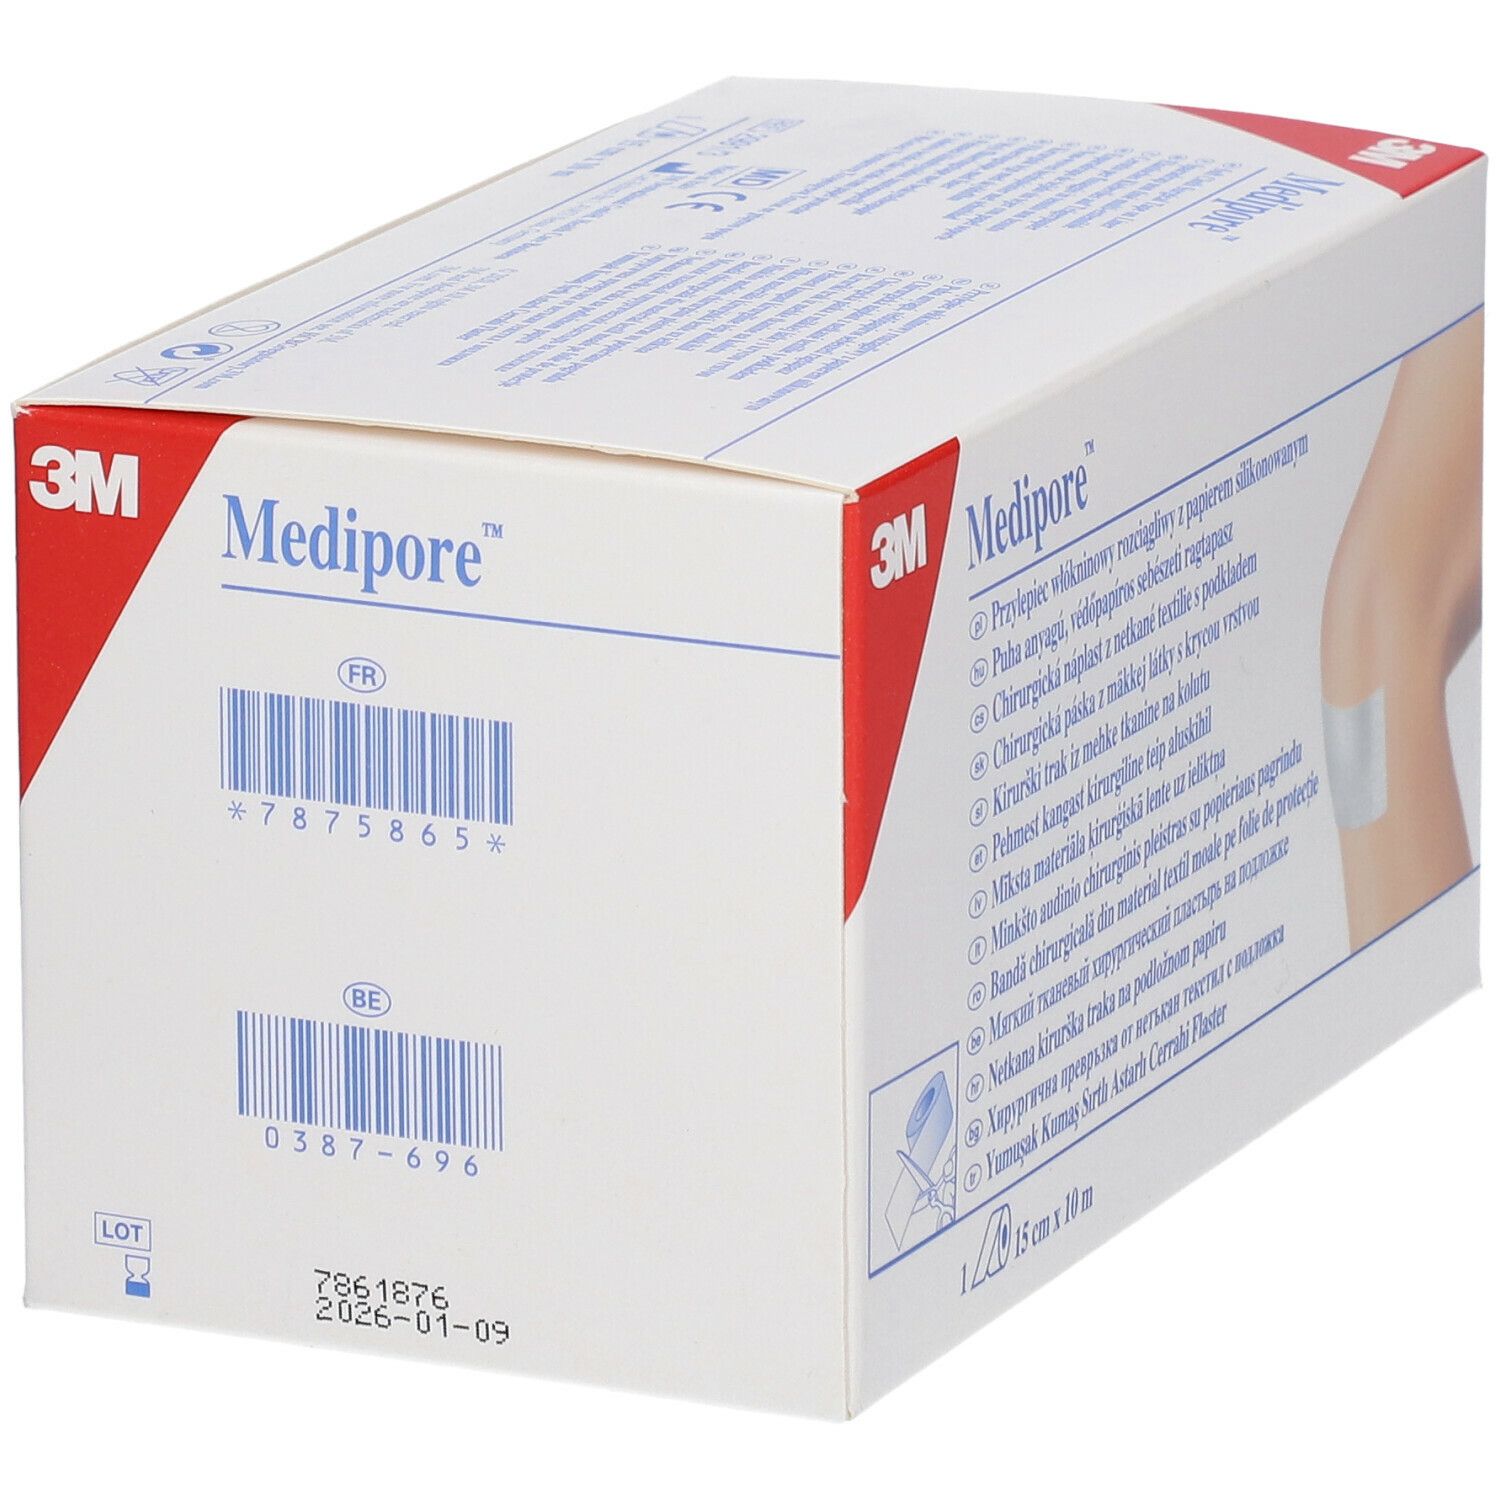 3M™ Medipore™ weiche chirurgische Pflaster 10 cm x 15 m